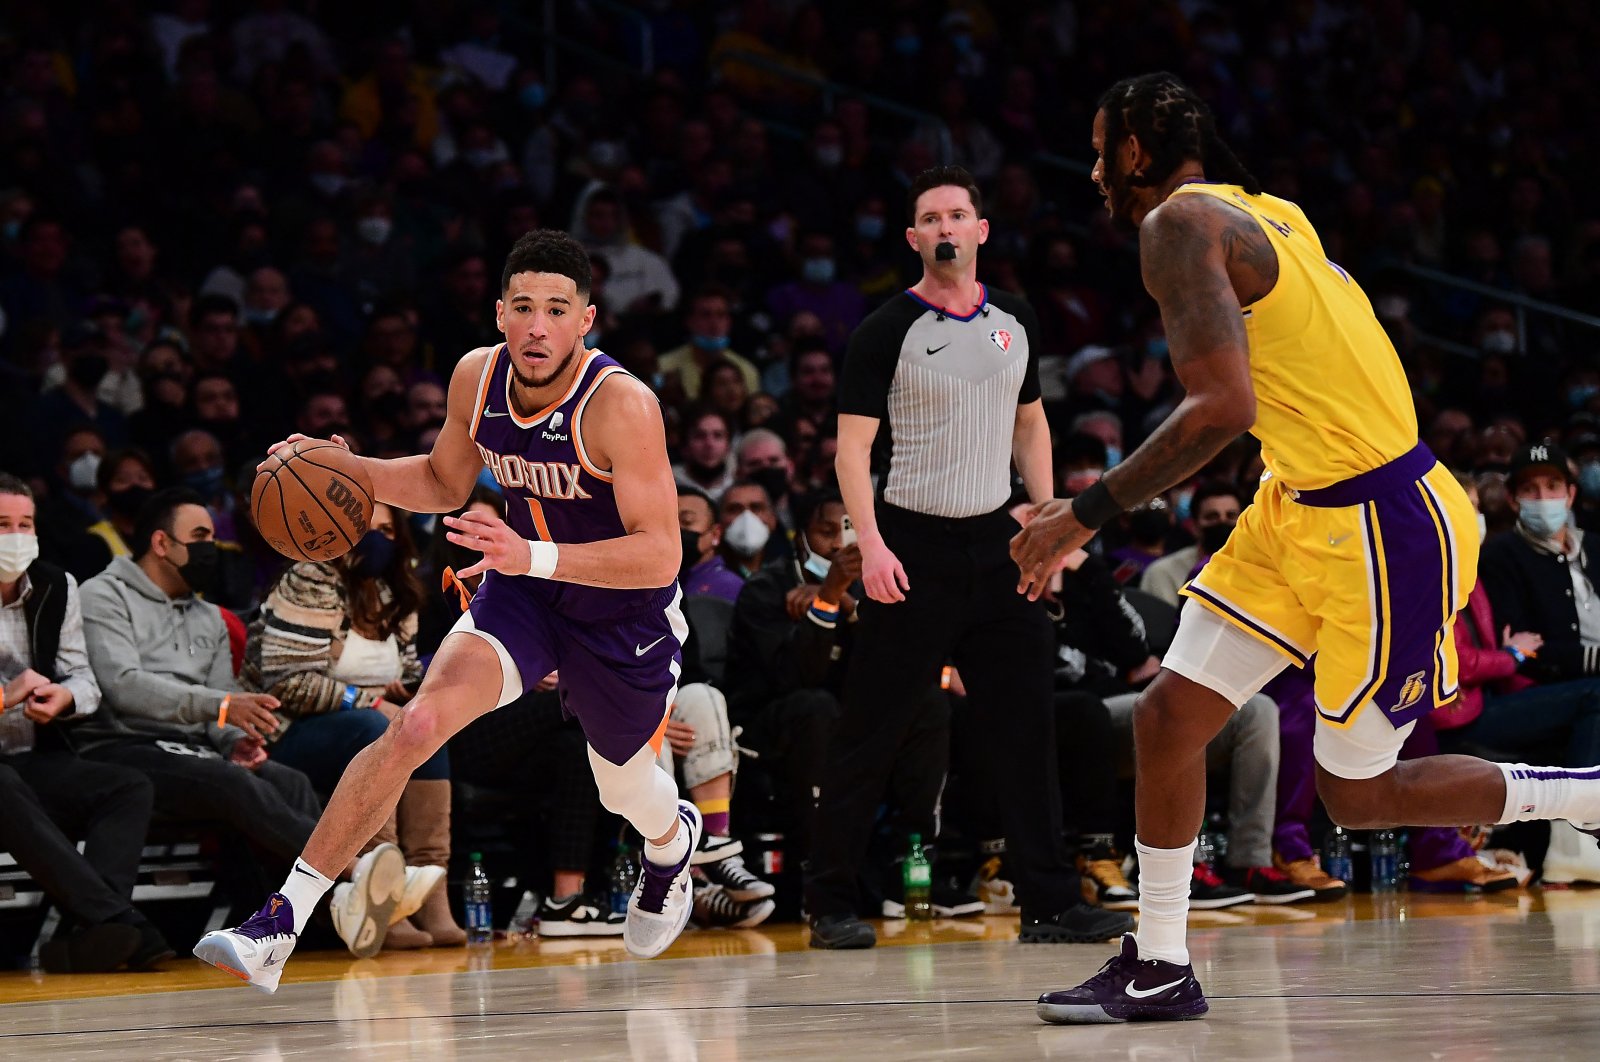 Pemimpin NBA Suns menghanguskan Lakers setelah Booker, Ayton mencuri pertunjukan